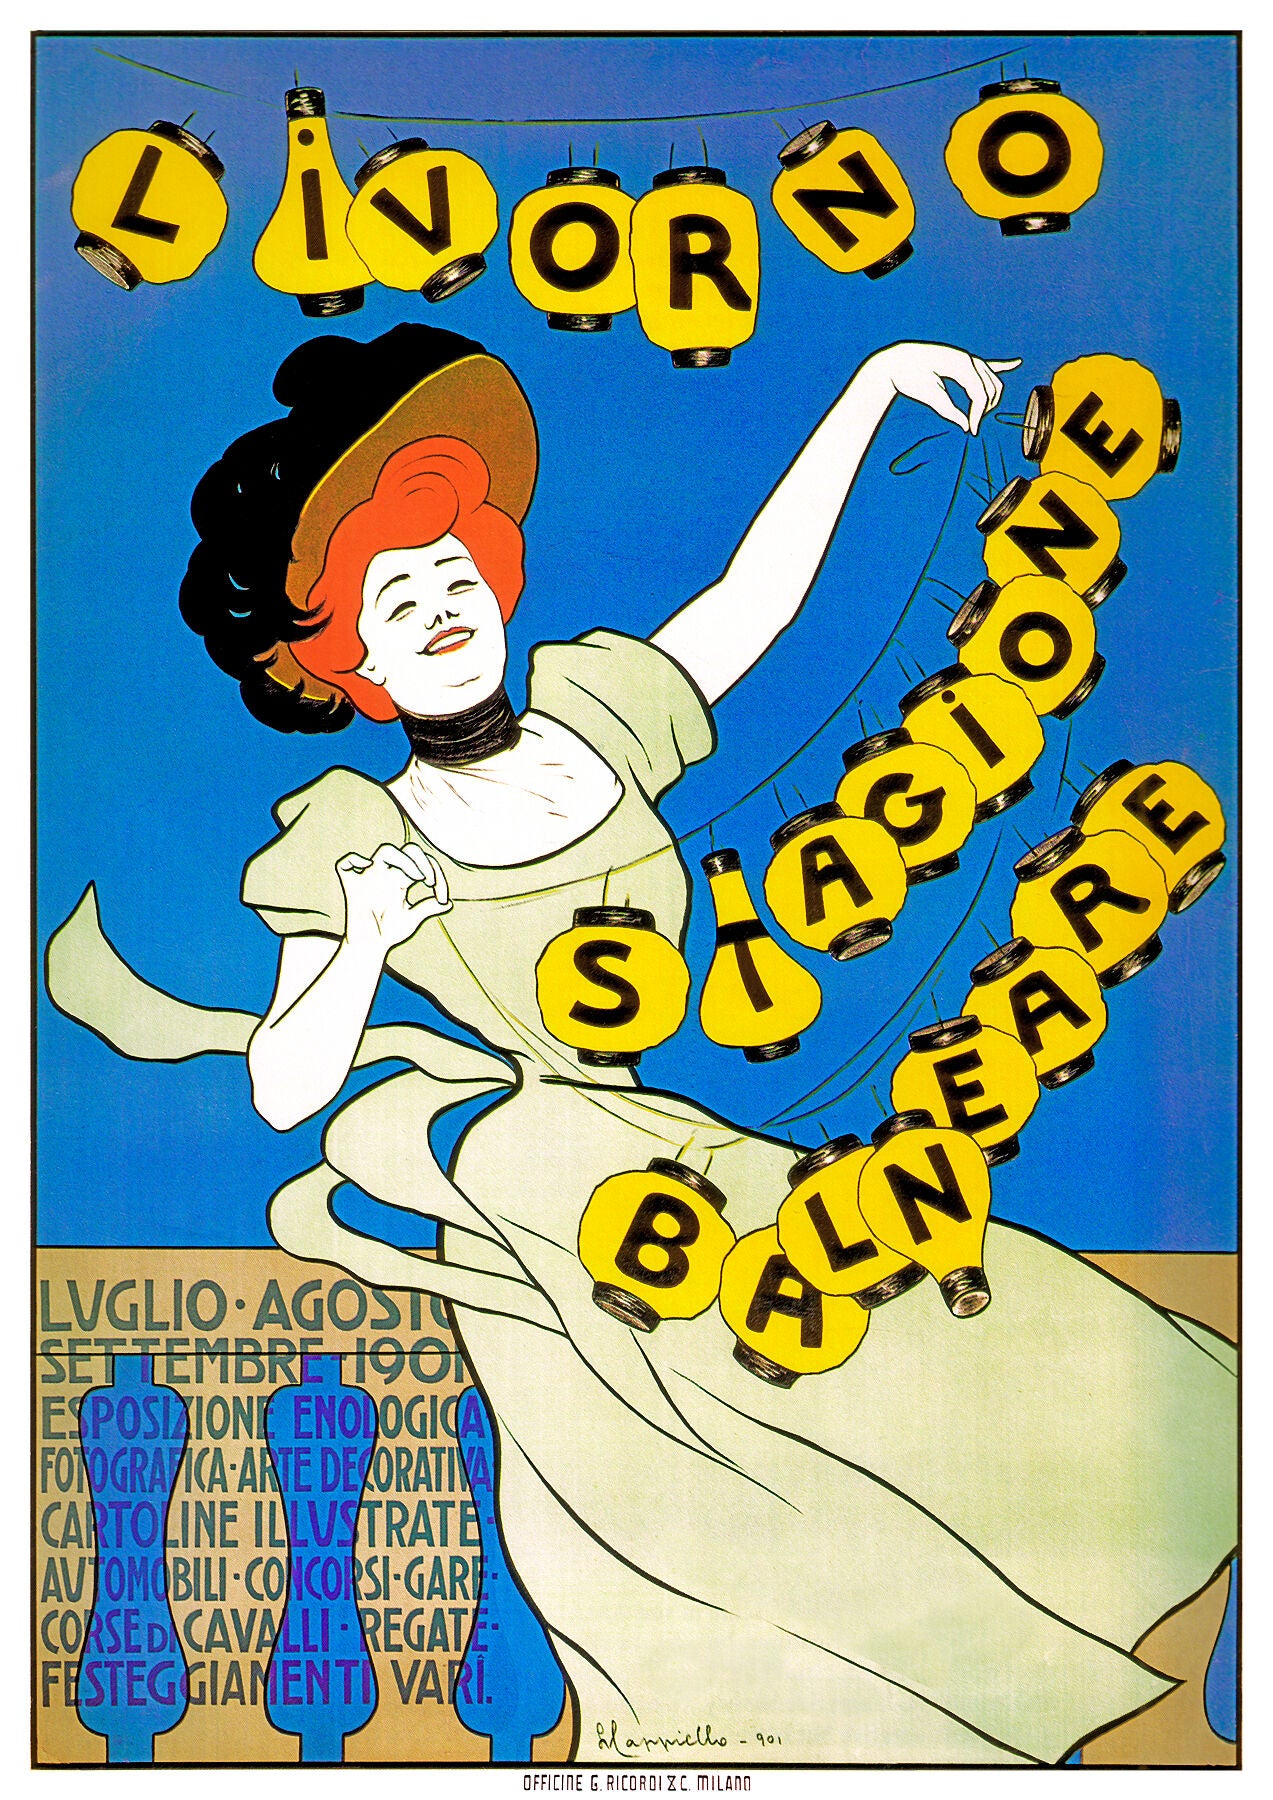 Livorno Stagione Balneare poster by Leonetto Cappiello